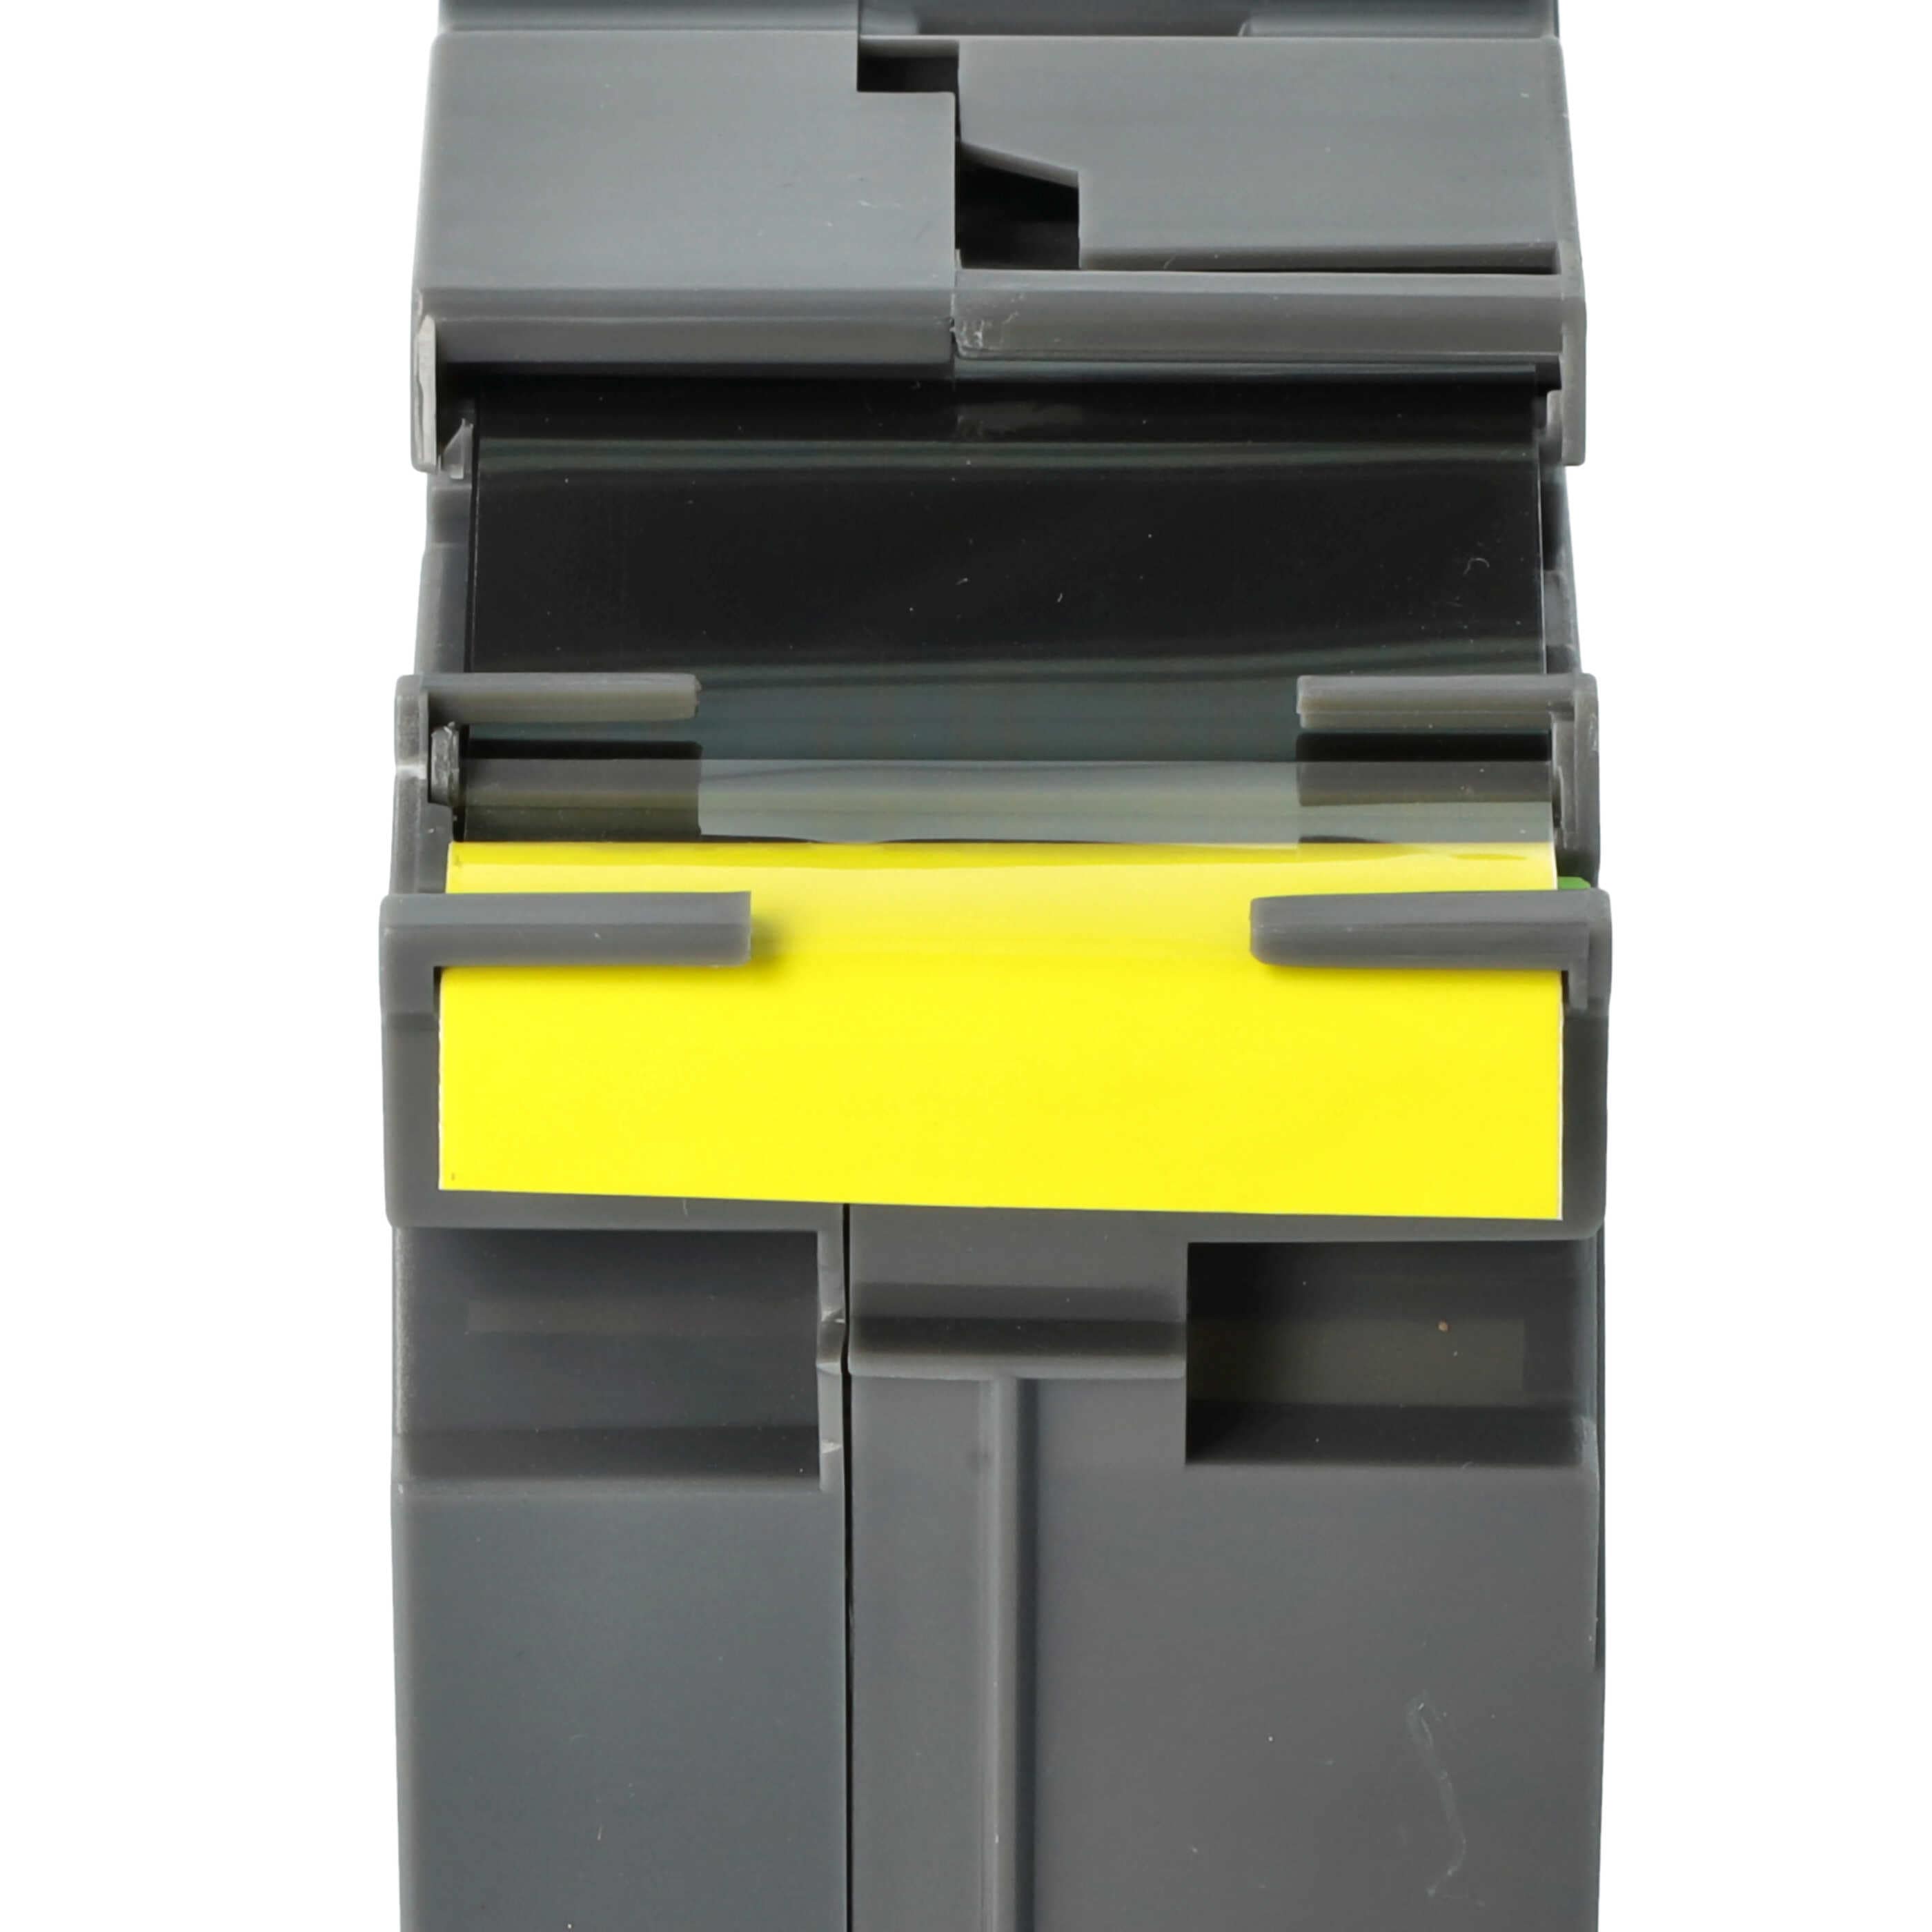 Taśma do etykiet zam. Brother TZE-661L, TZ-661 - 36mm, napis czarny / taśma żółta